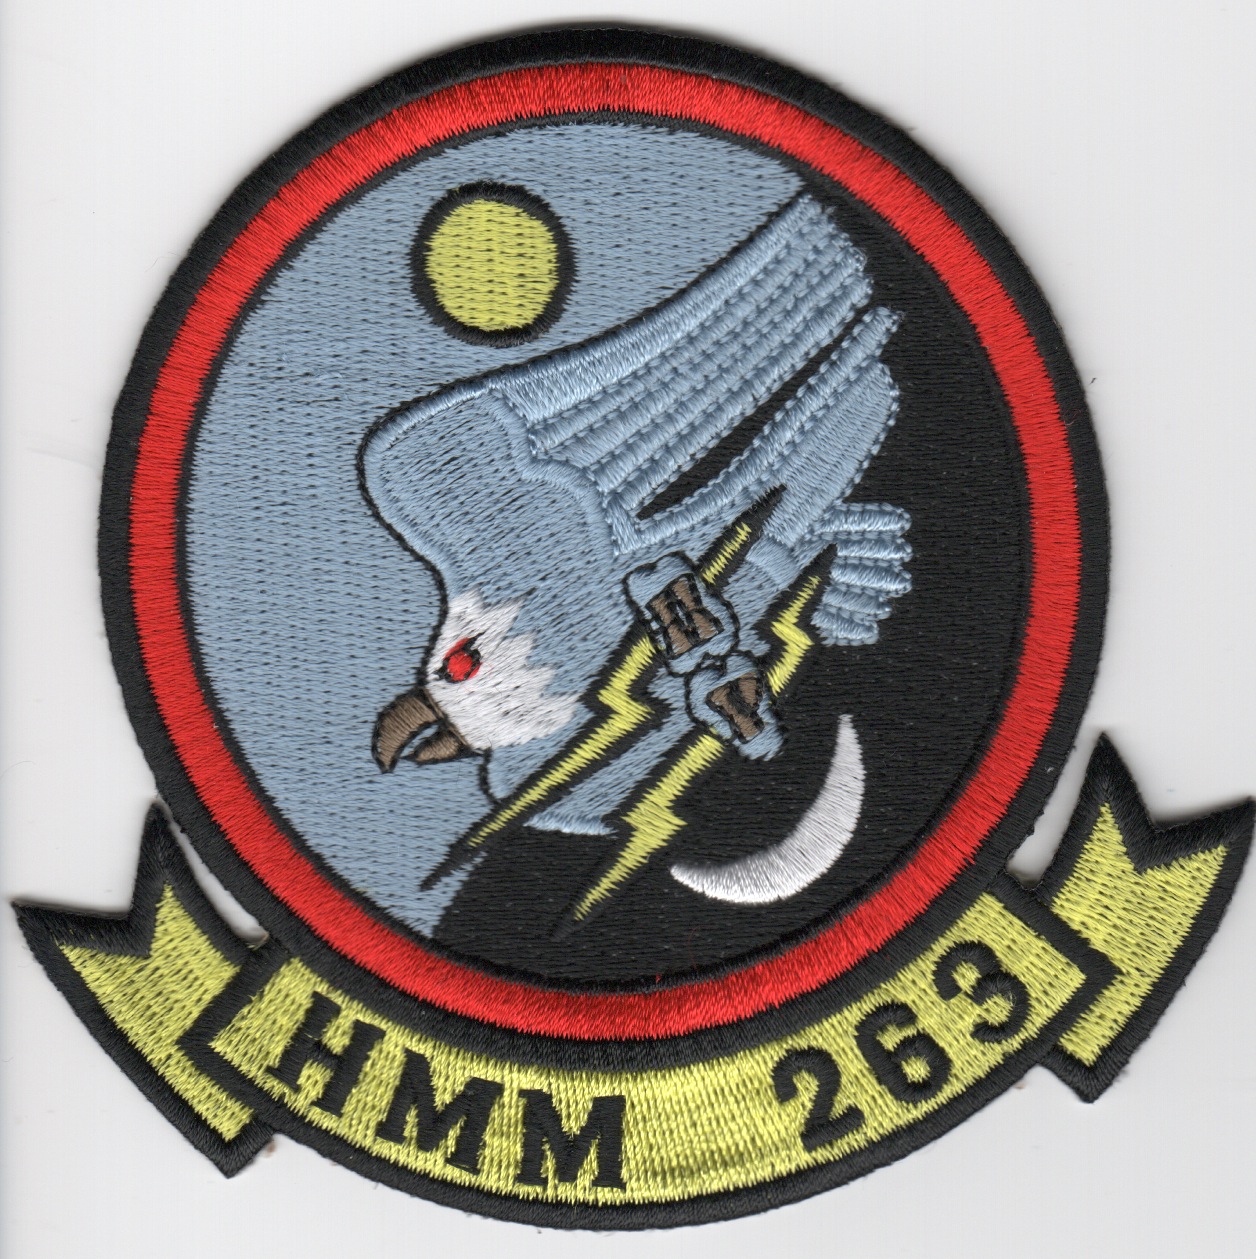 HMM-263 Squadron Patch